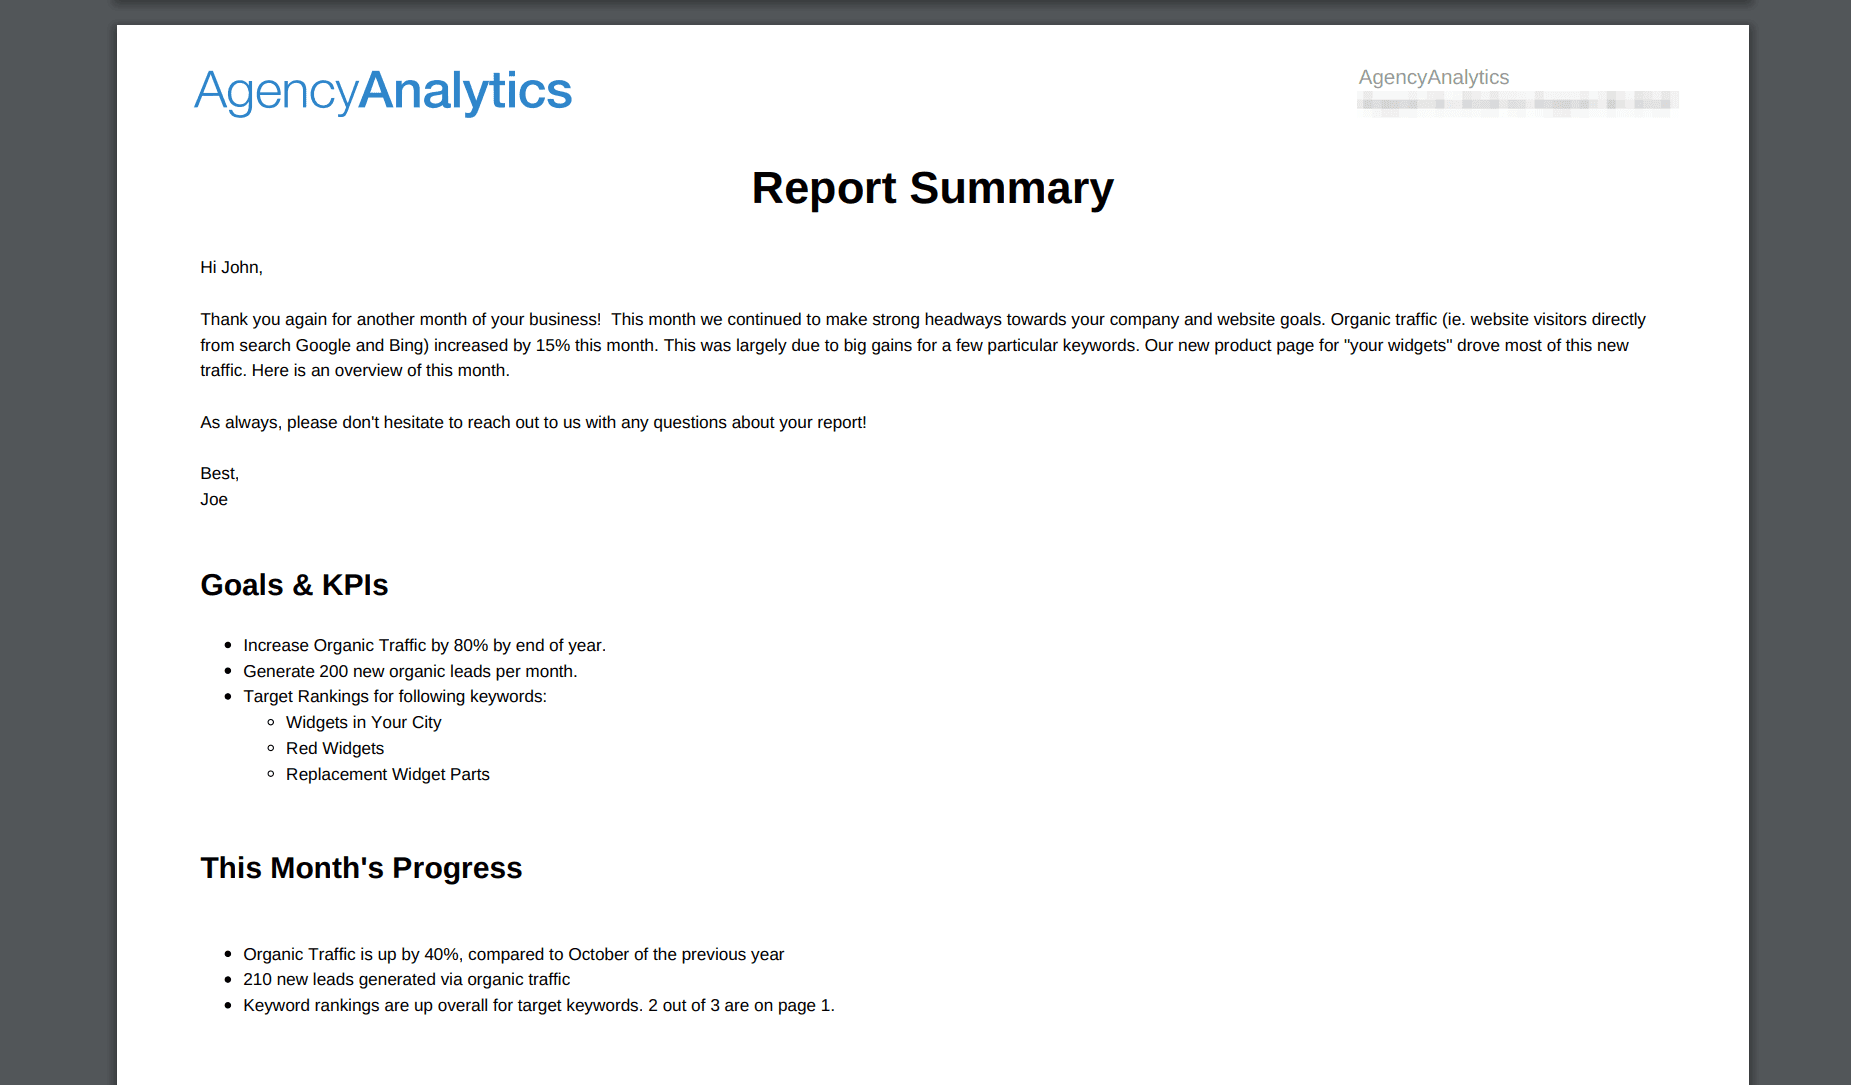 Marketing report summary